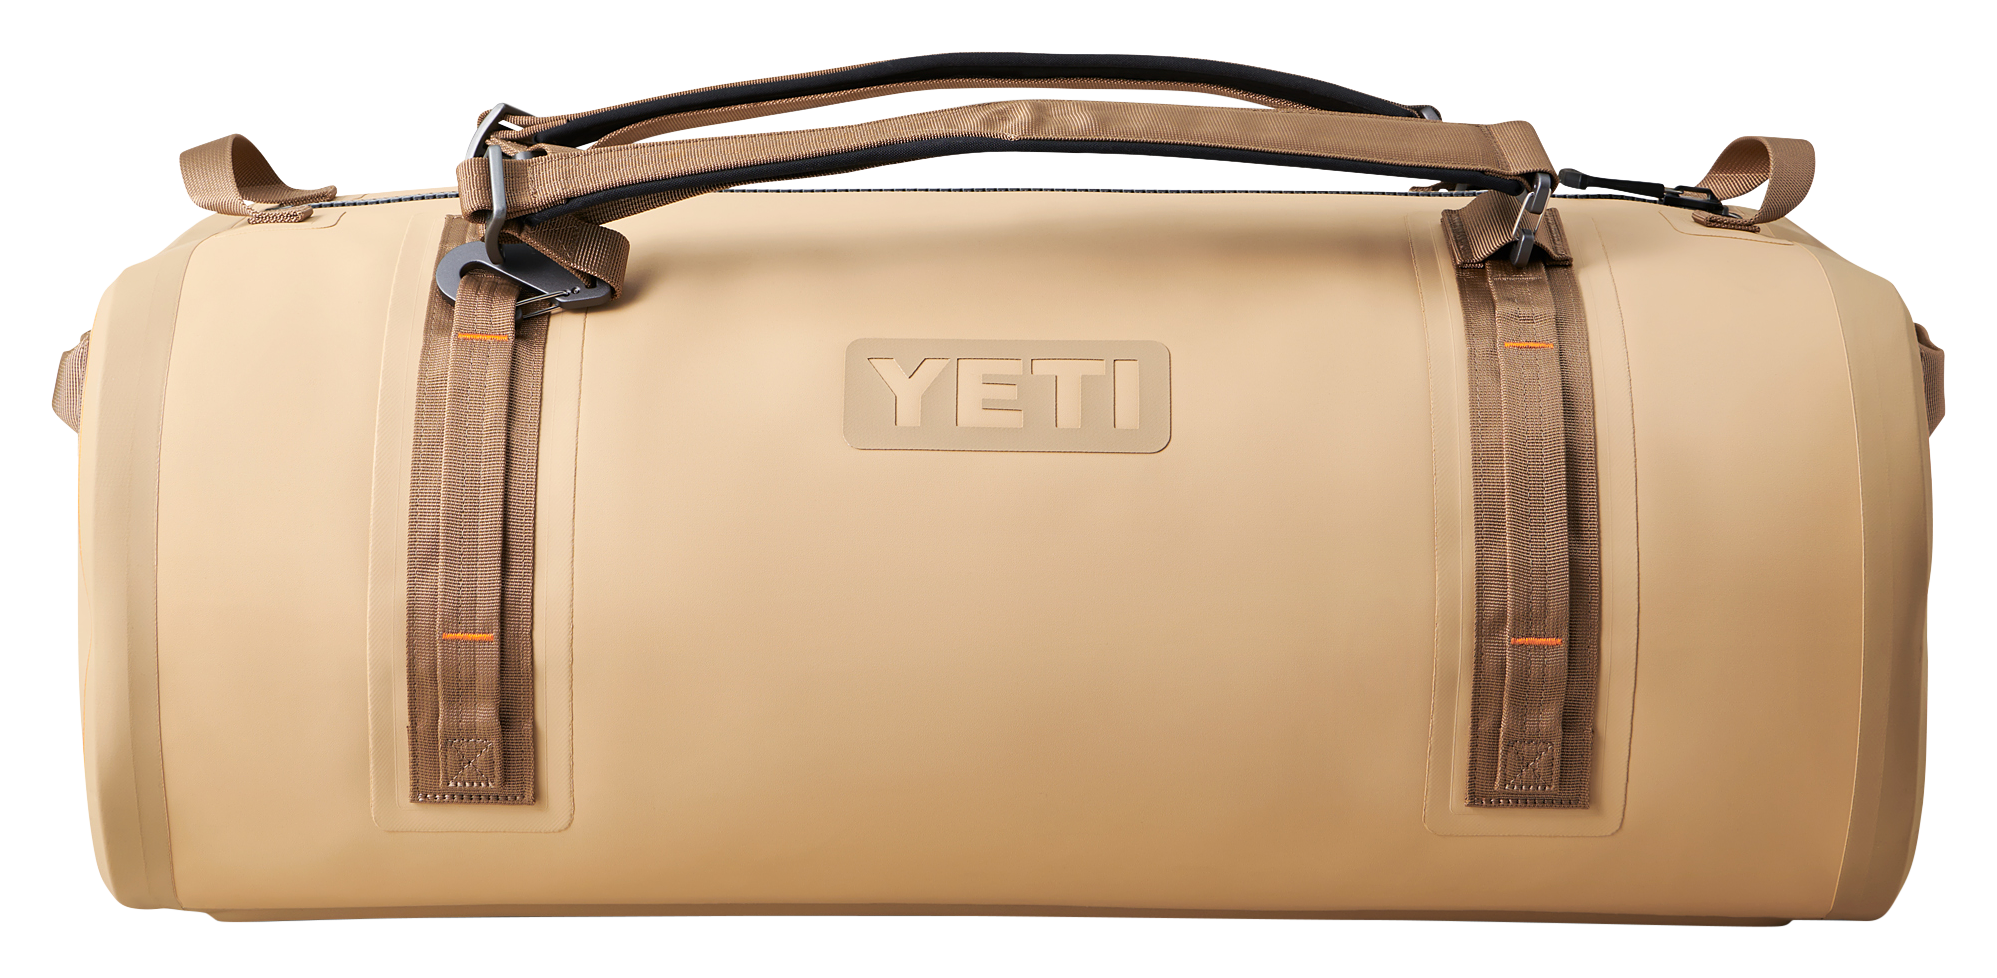 YETI Bags